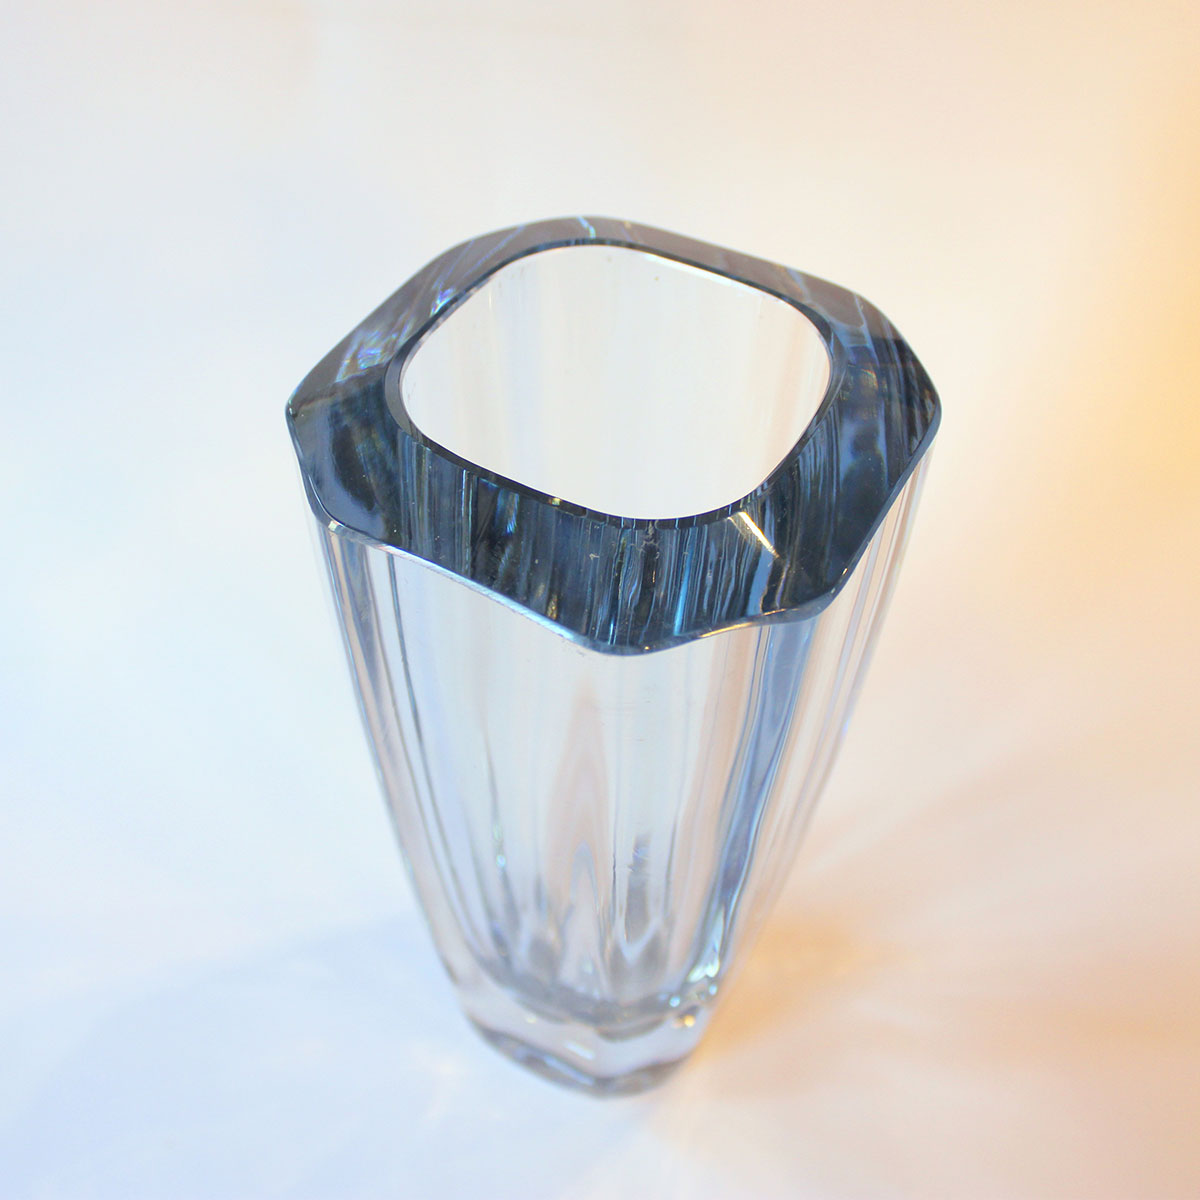 Vasen er i meget kraftig blæst glas formet med otte sider